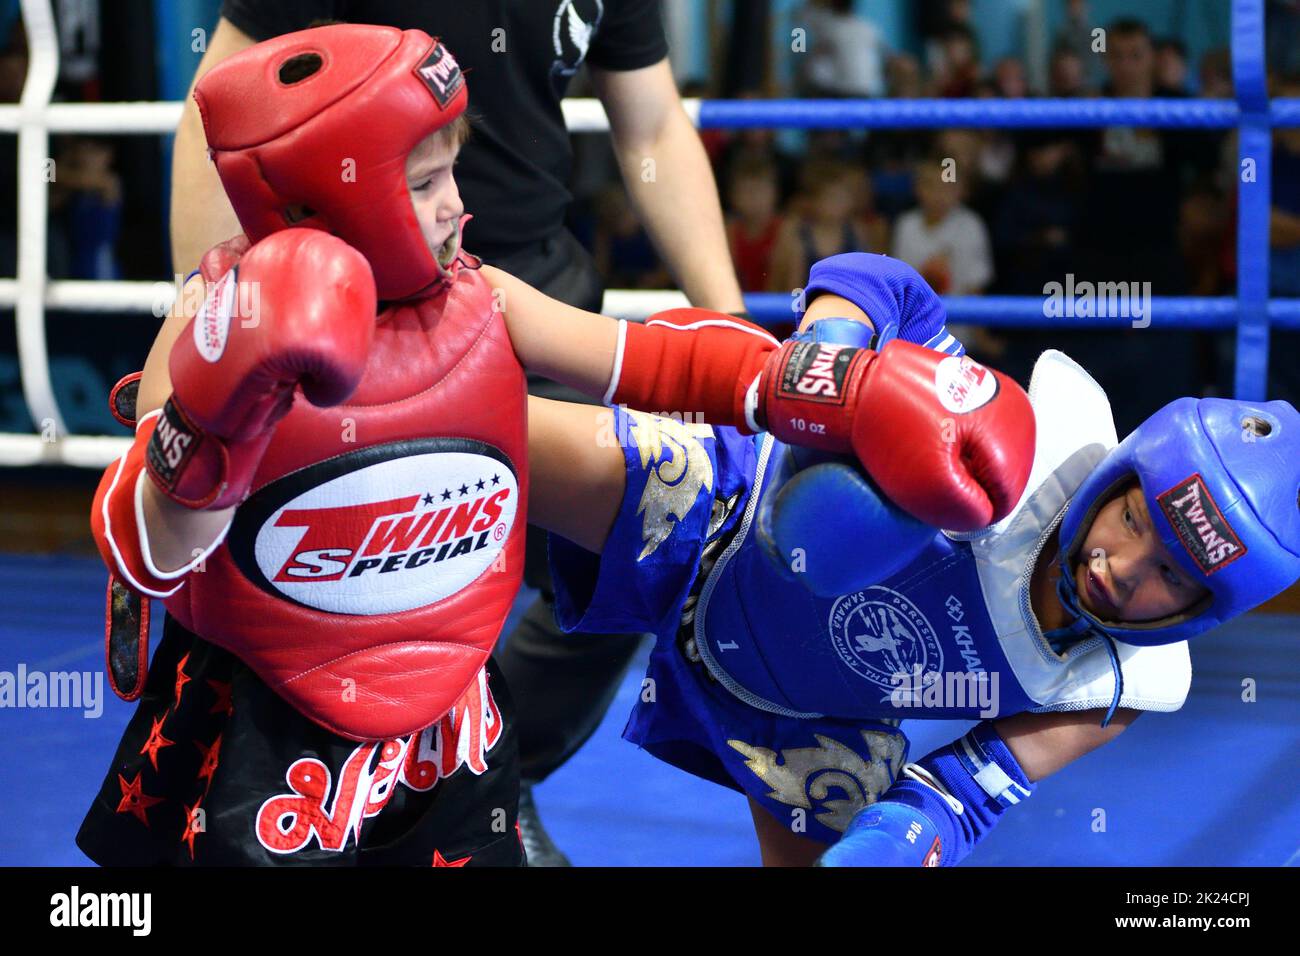 Orenbourg, Russie - 20 octobre 2019: Un garçon concourra en boxe thaï pour la coupe d'Orenbourg en boxe thaï – Muay Thai – art martial Thaïlande Banque D'Images